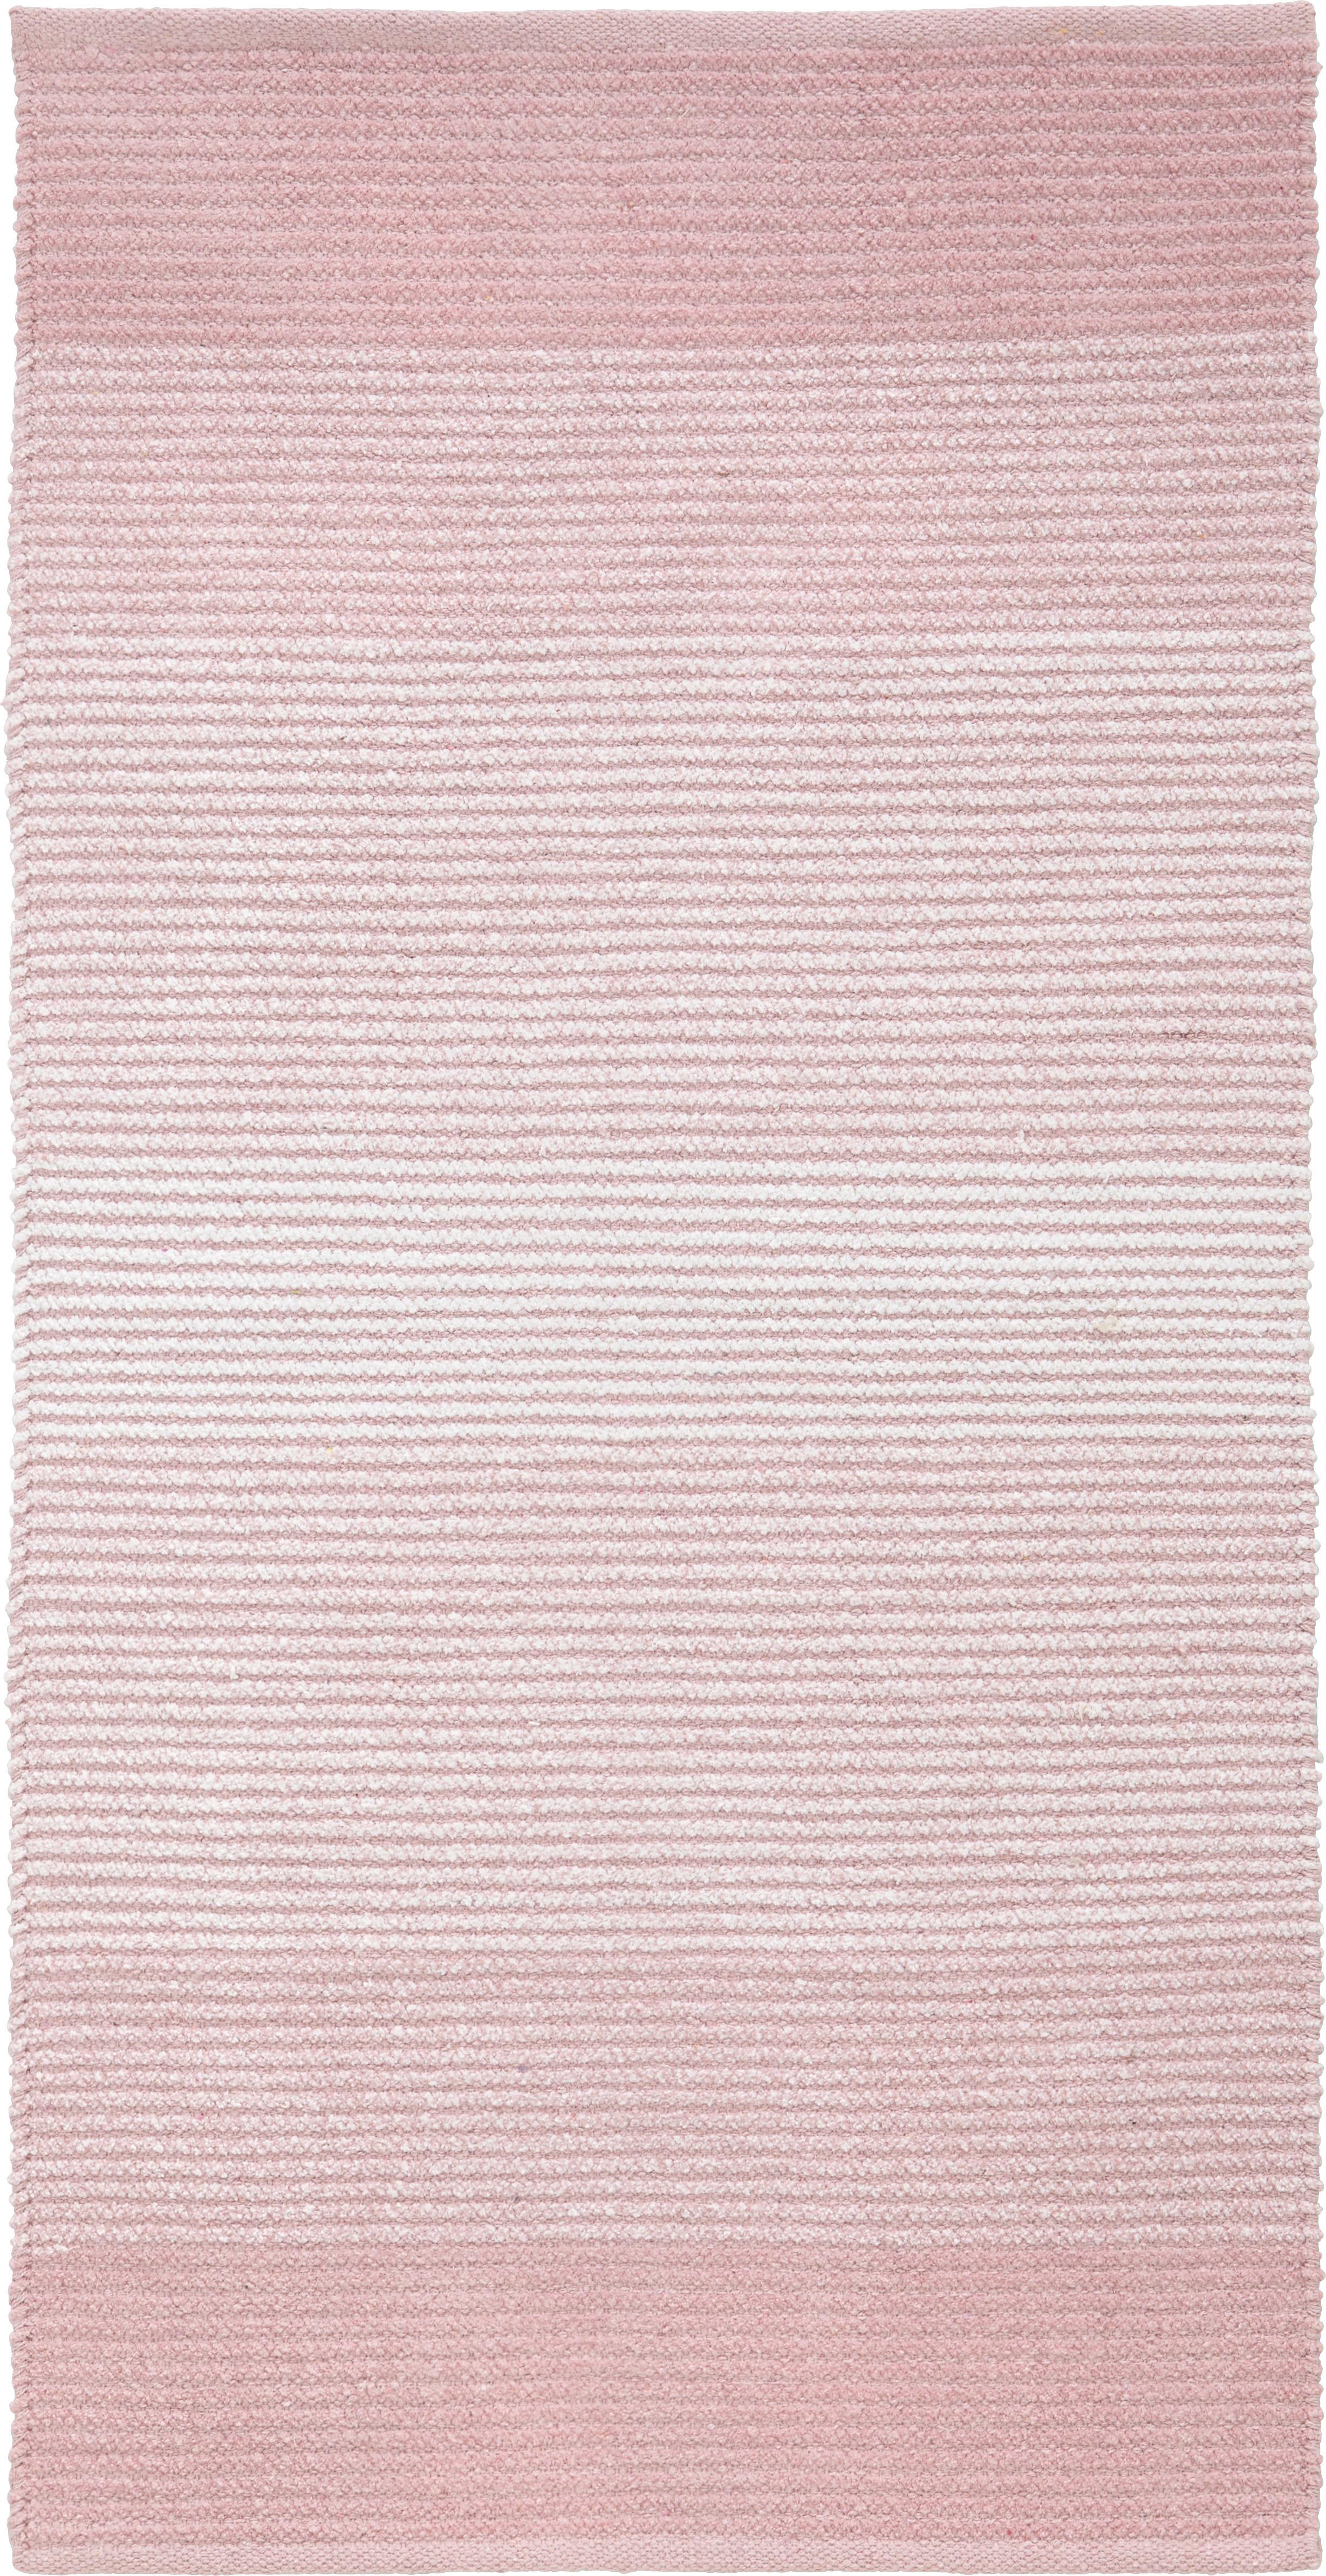 Plátaný Koberec Malto, 70/140cm, Ružová - ružová, Moderný, textil (70/140cm) - Modern Living